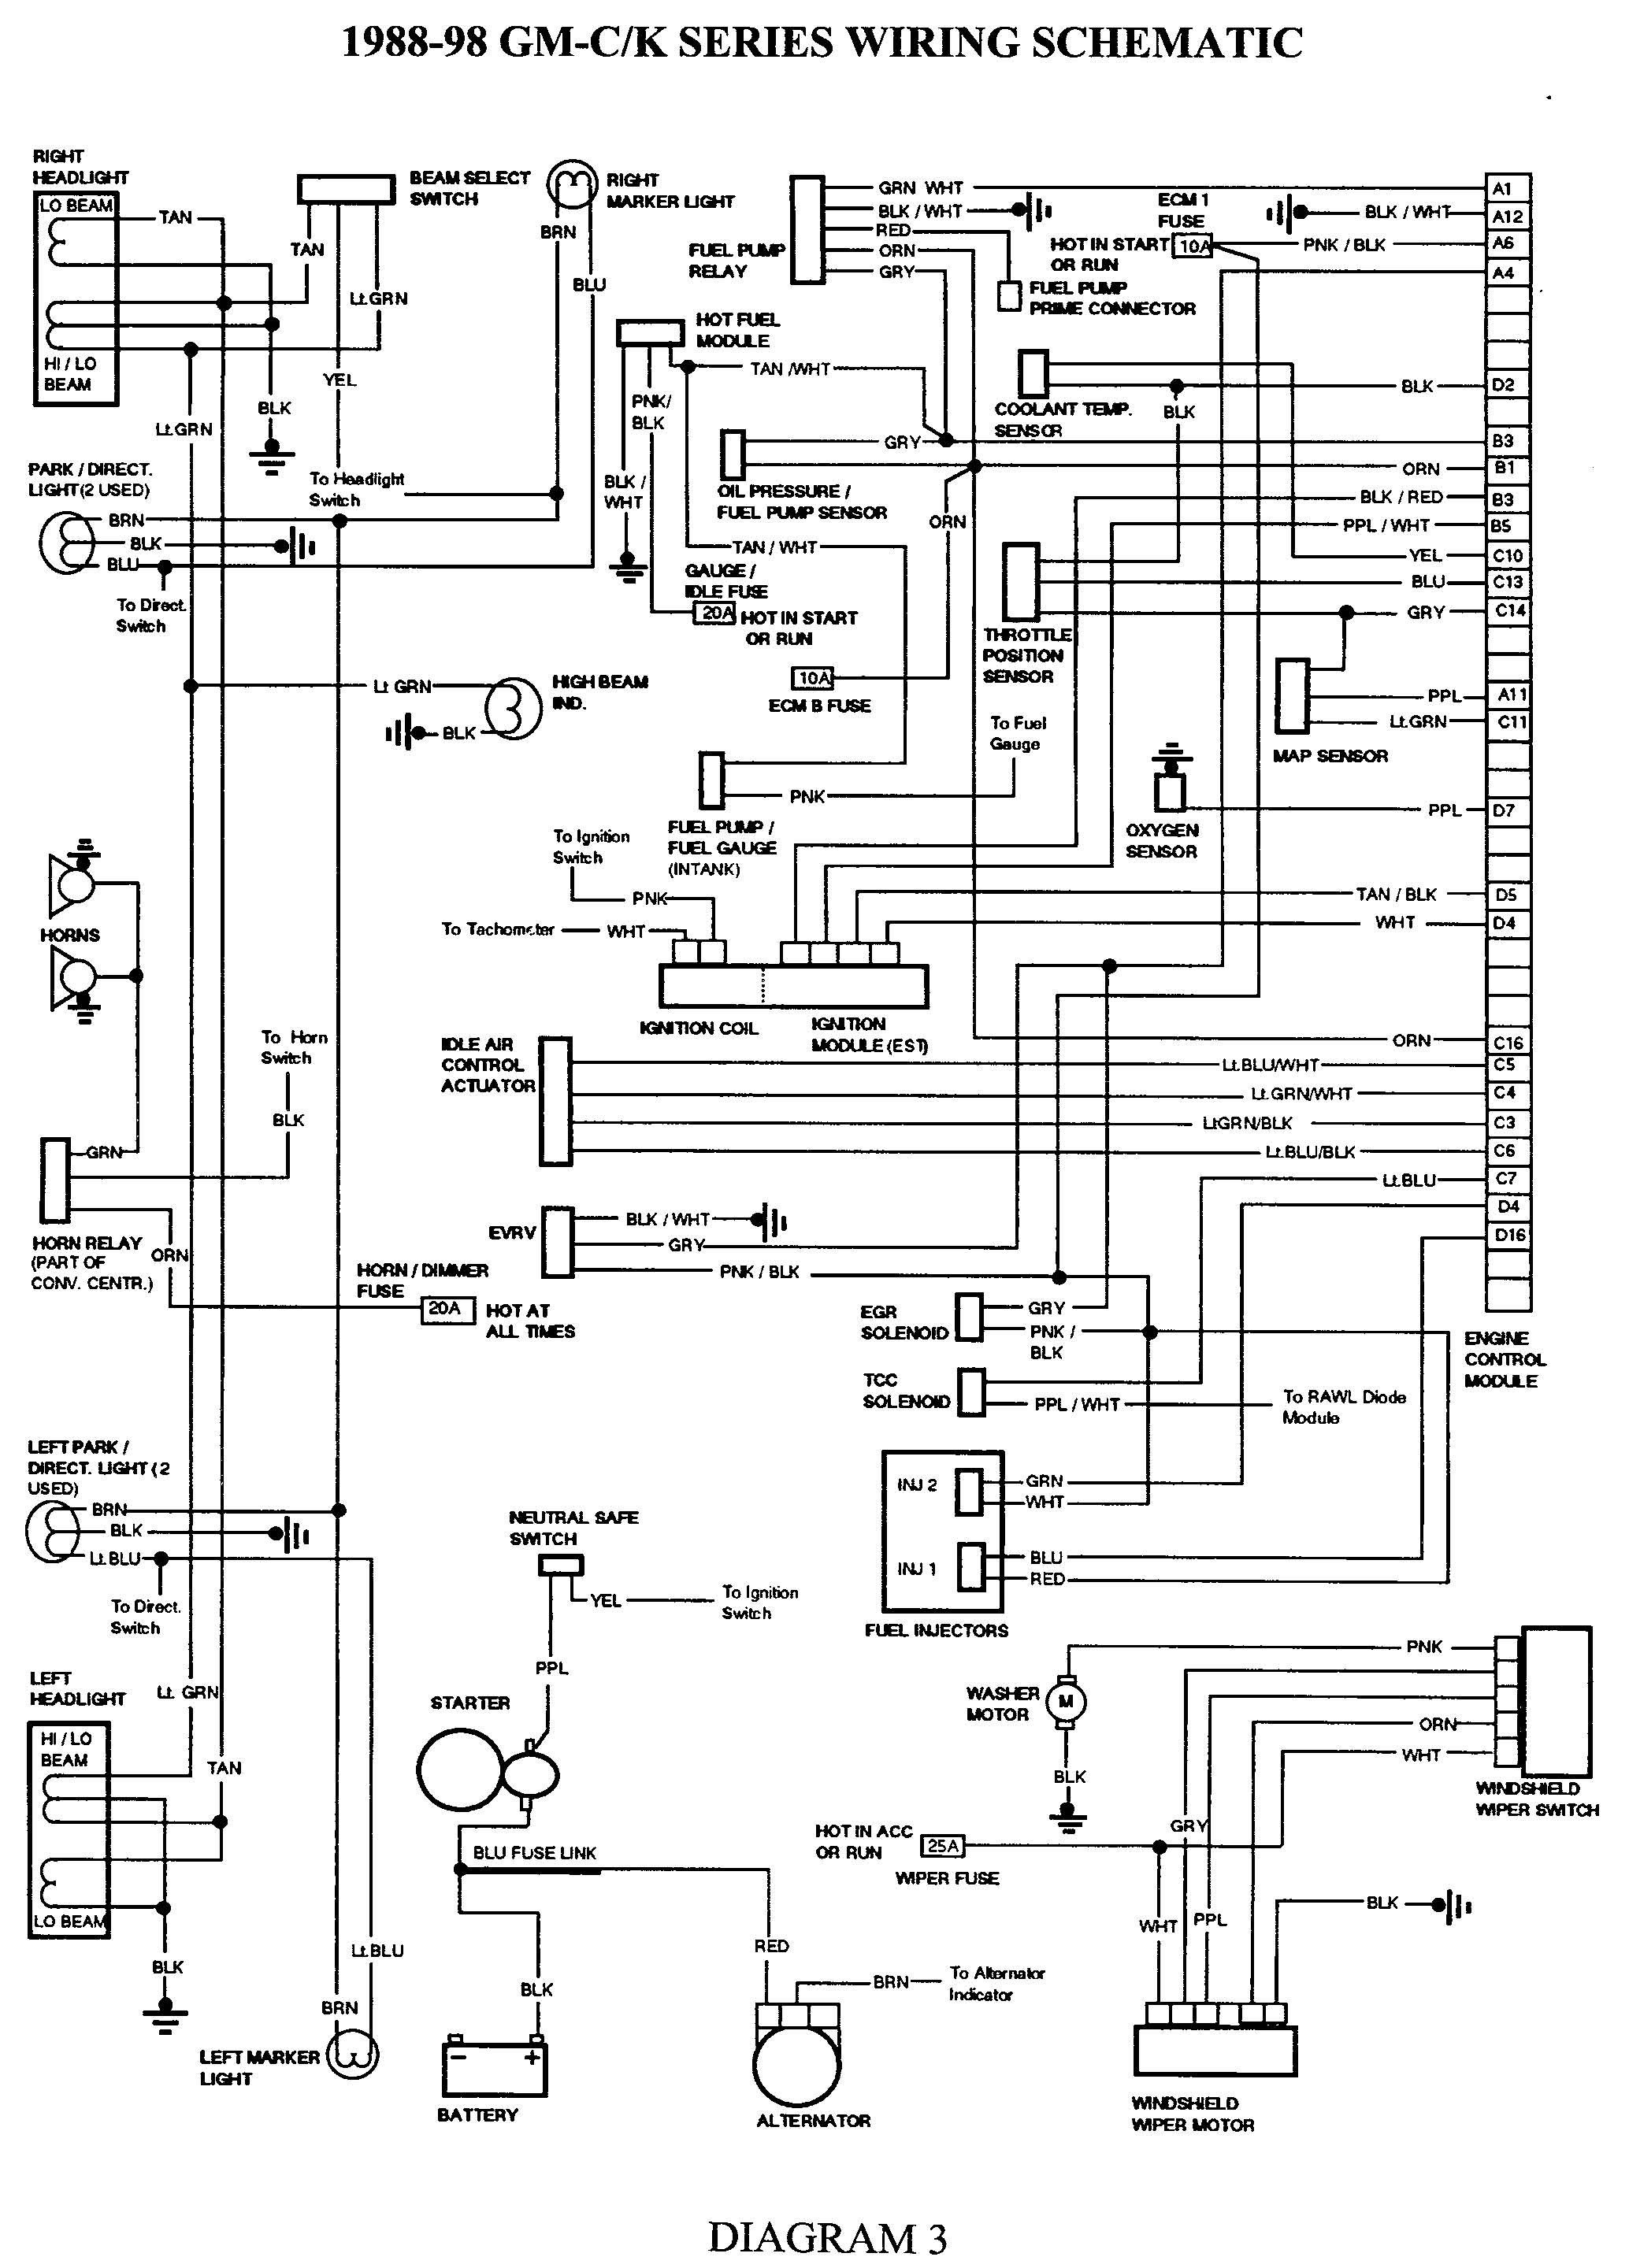 chevy truck wiring diagram manual fresh elegant 2008 chevy silverado rh gidn co wiring diagram for